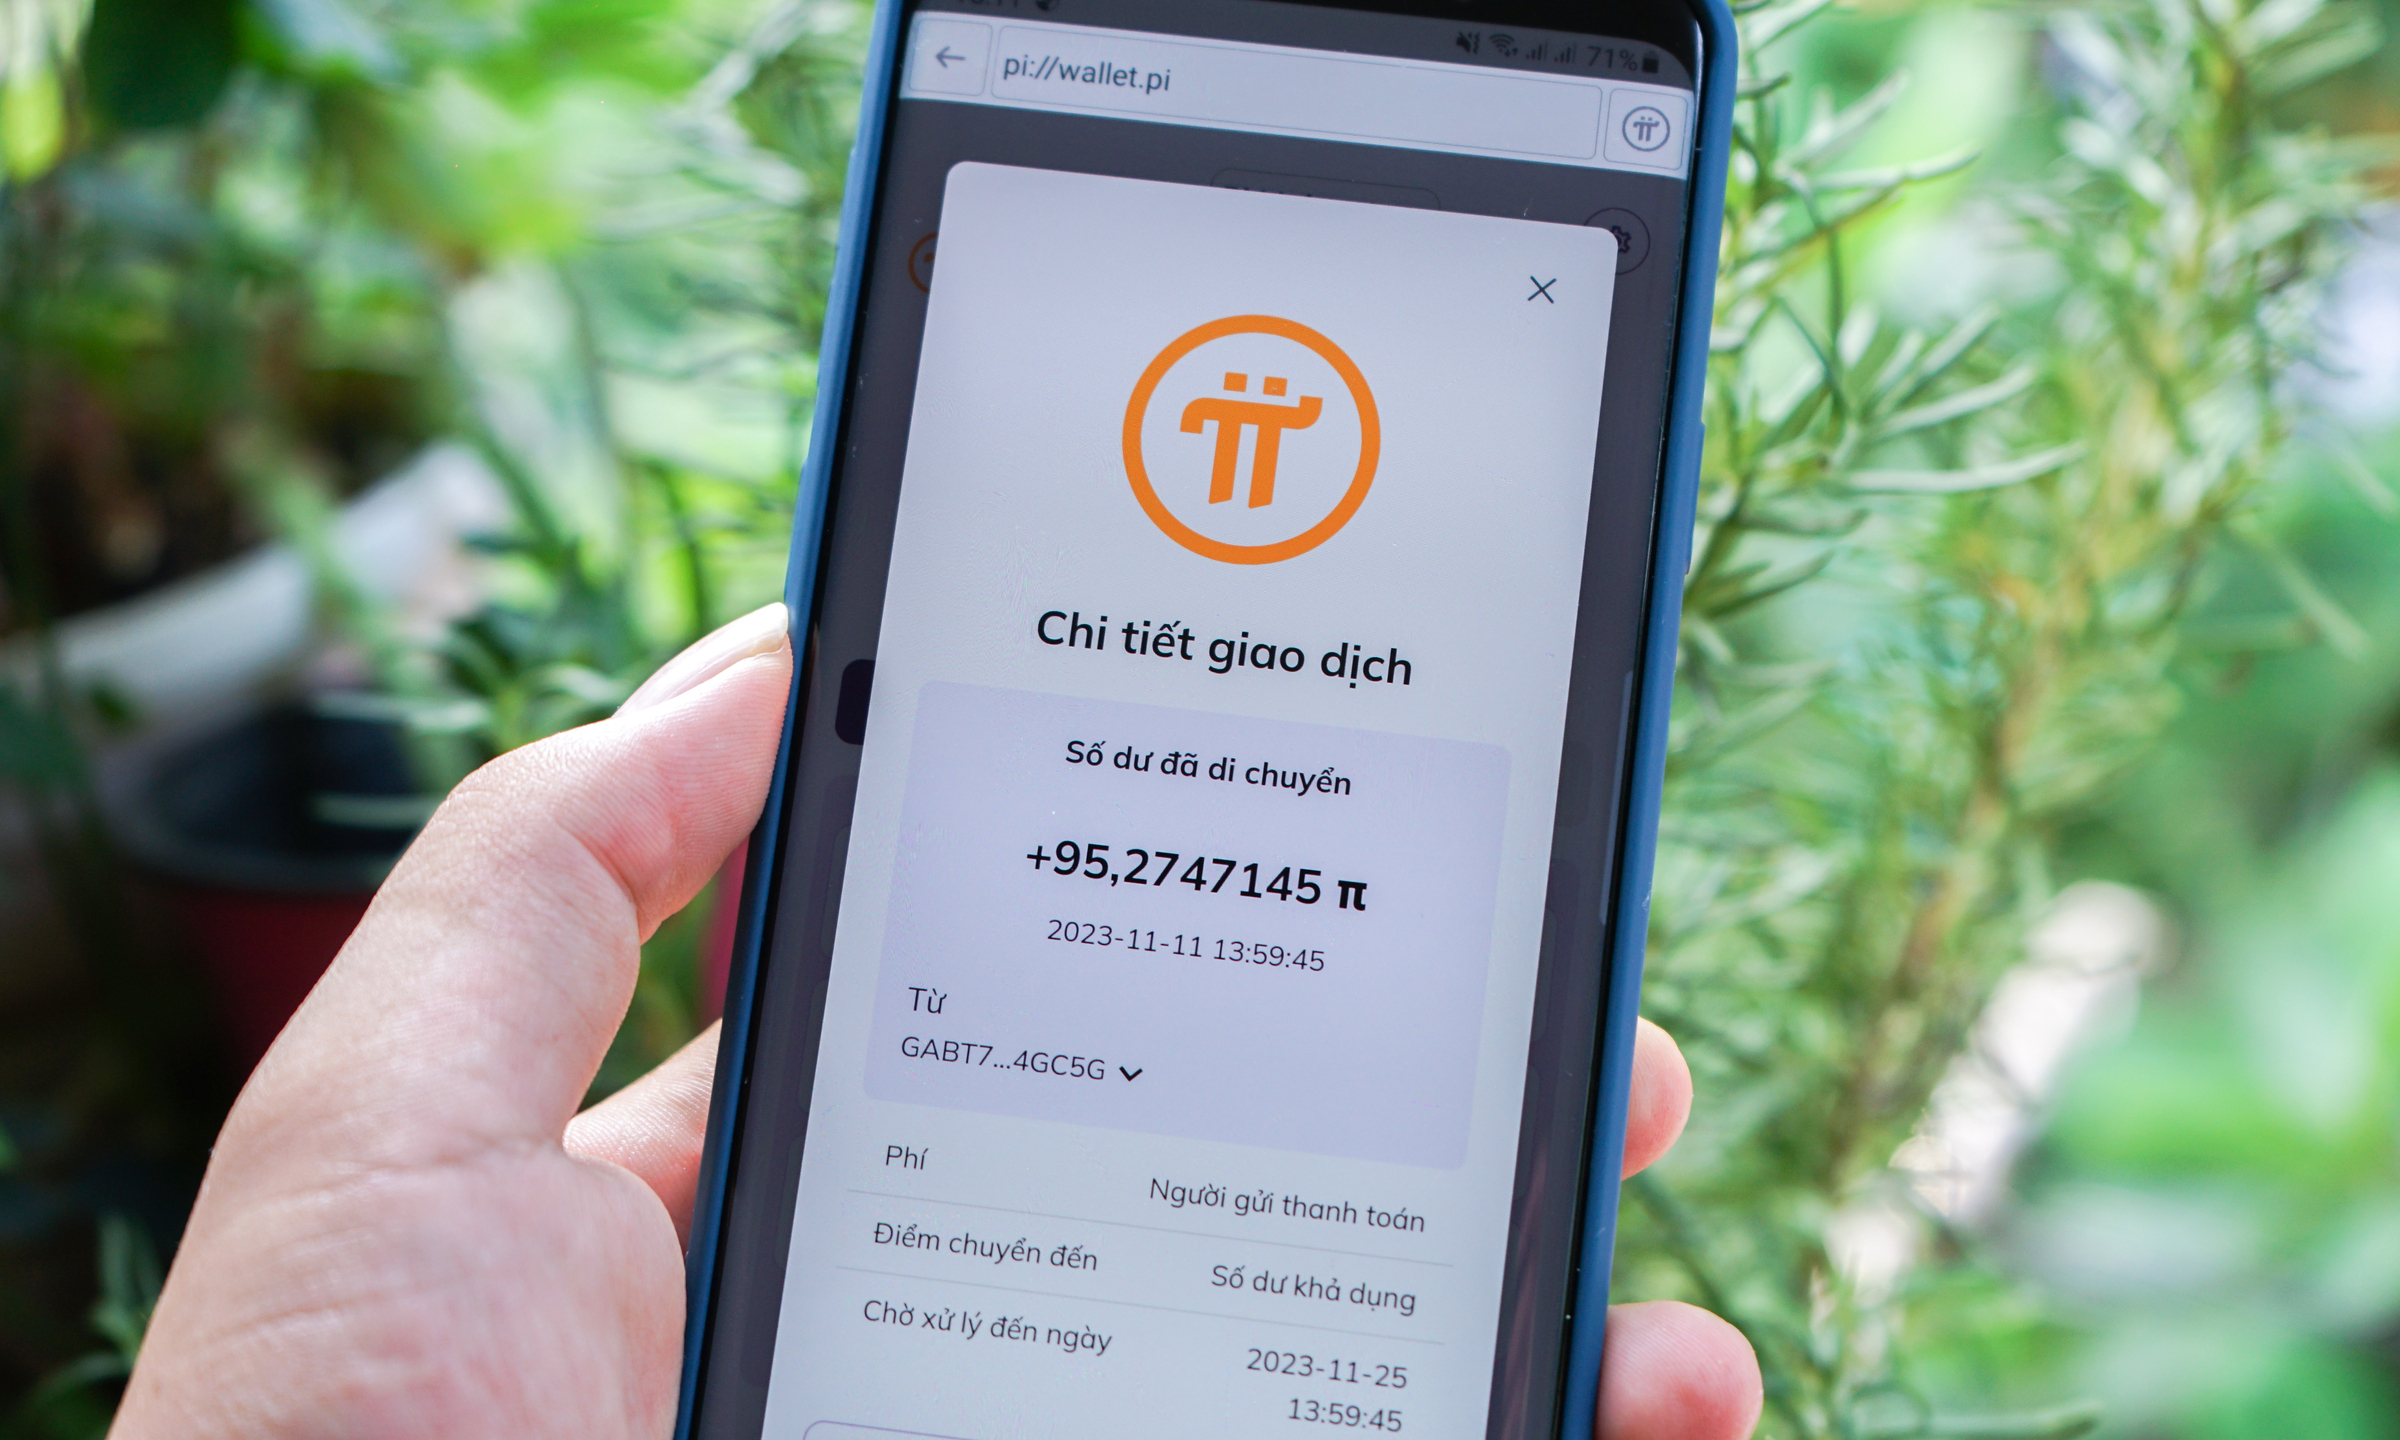 Một smartphone hiển thị chi tiết giao dịch tiền ảo Pi. Ảnh: Bảo Lâm